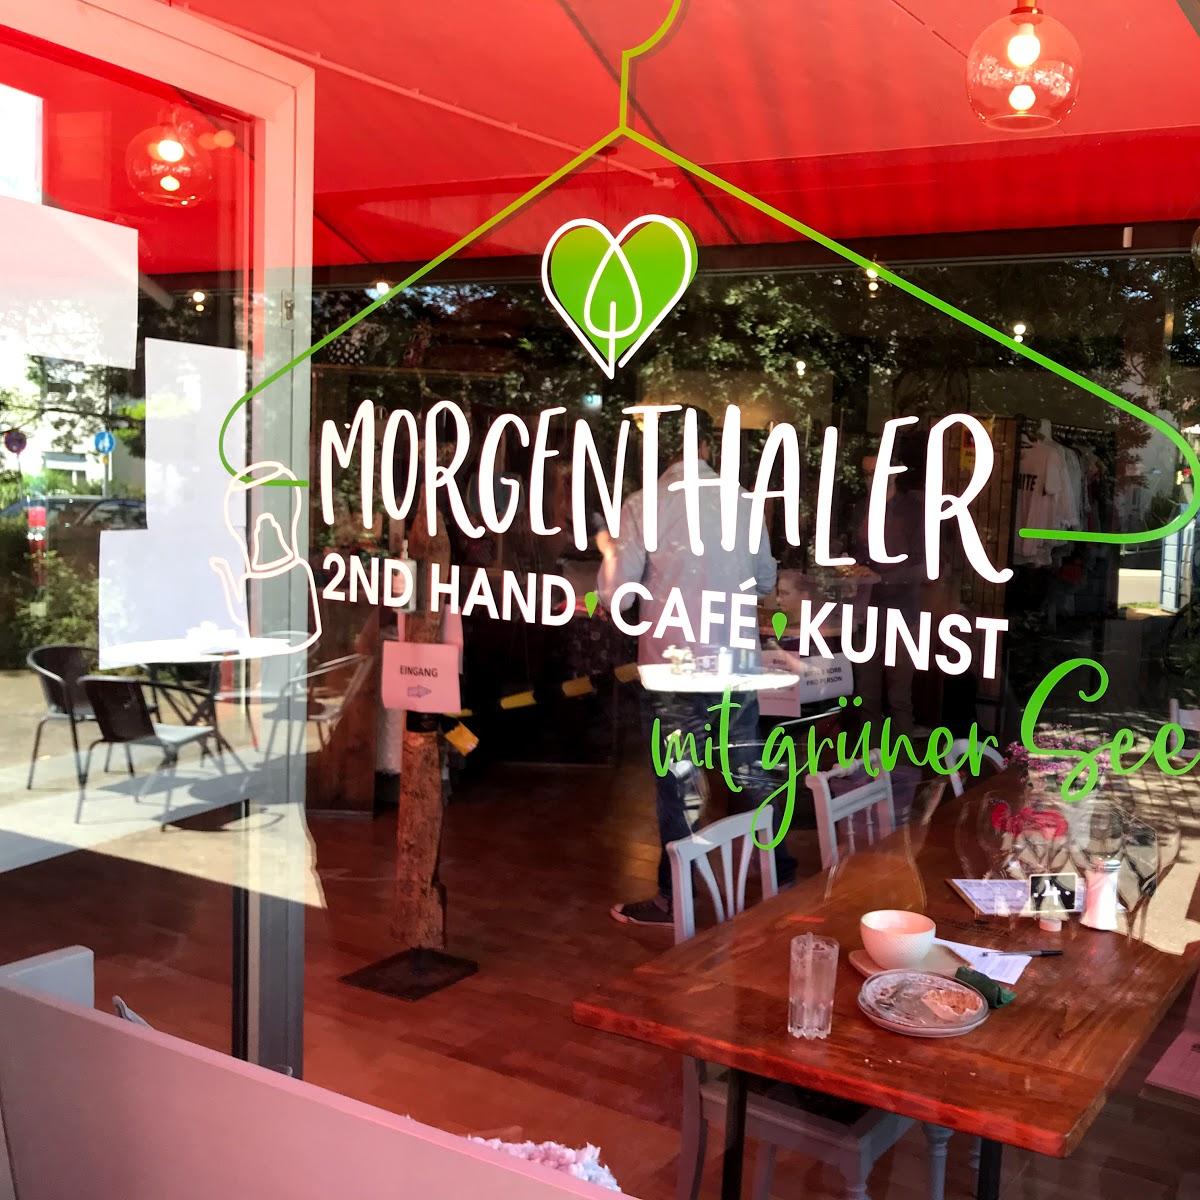 Restaurant "Morgenthaler 2nd hand" in Schönaich